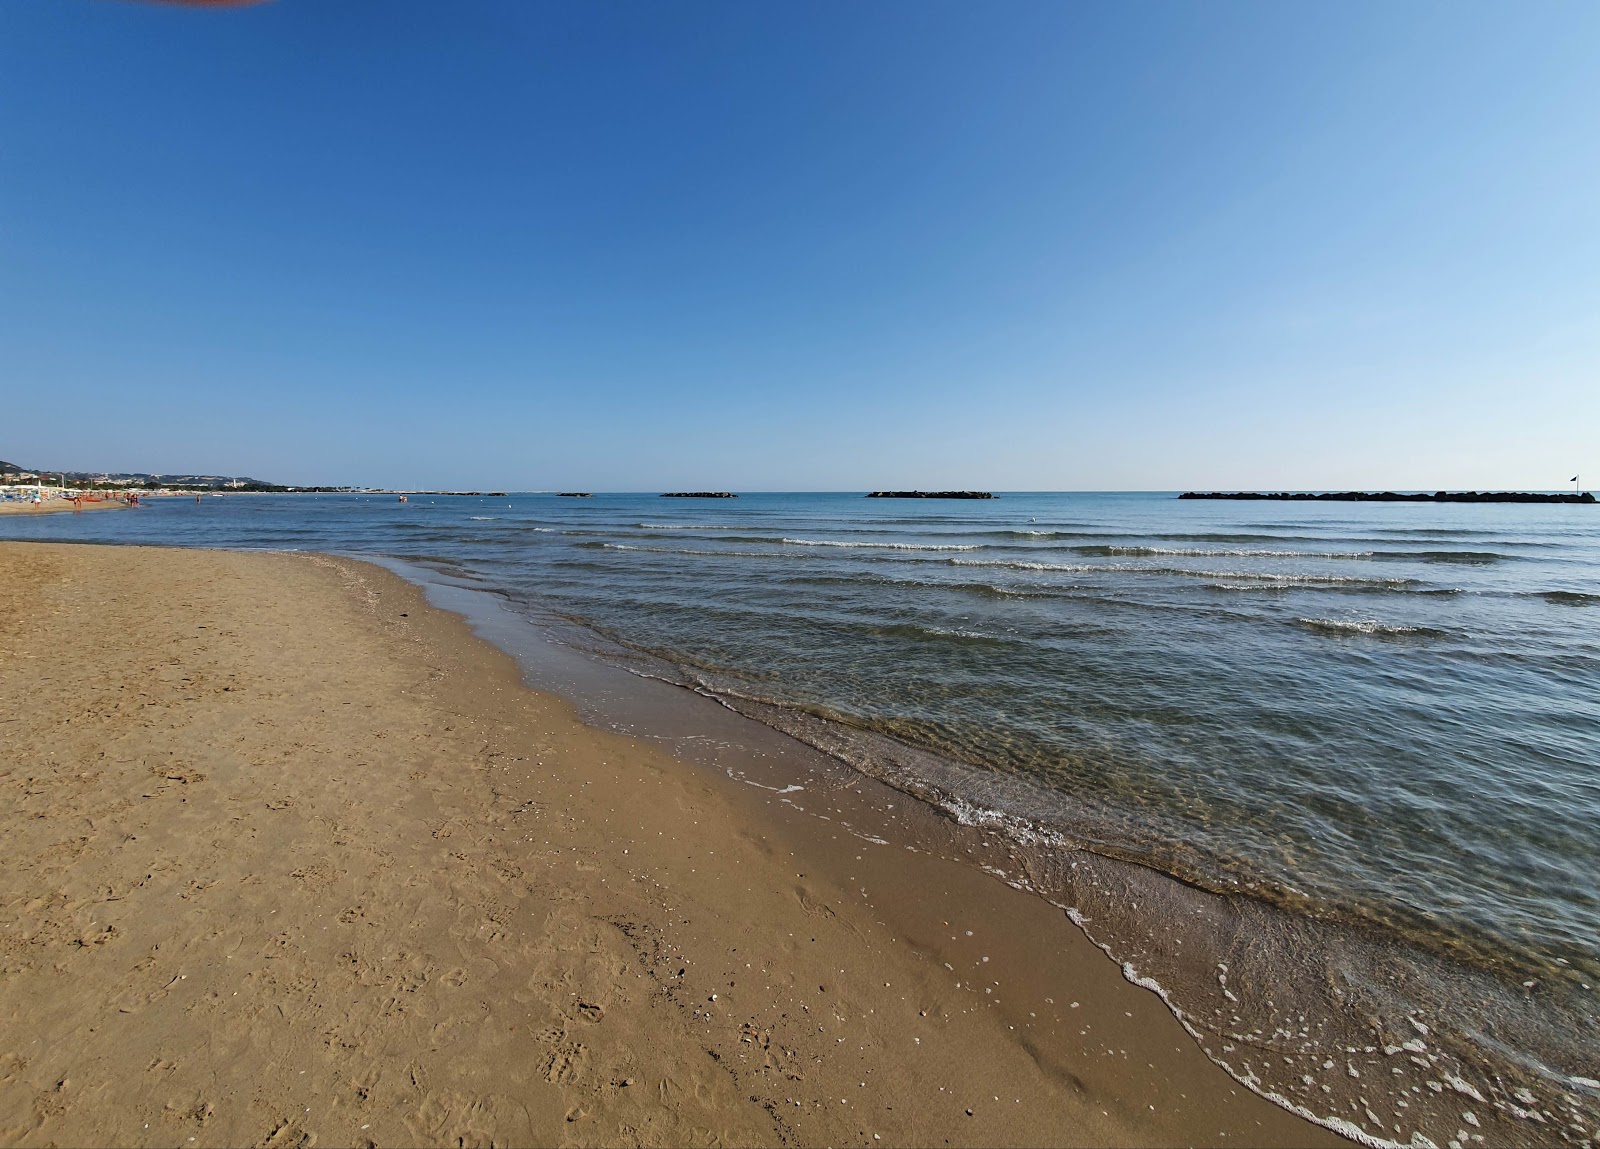 Foto af Spiaggia Campo Europa - populært sted blandt afslapningskendere